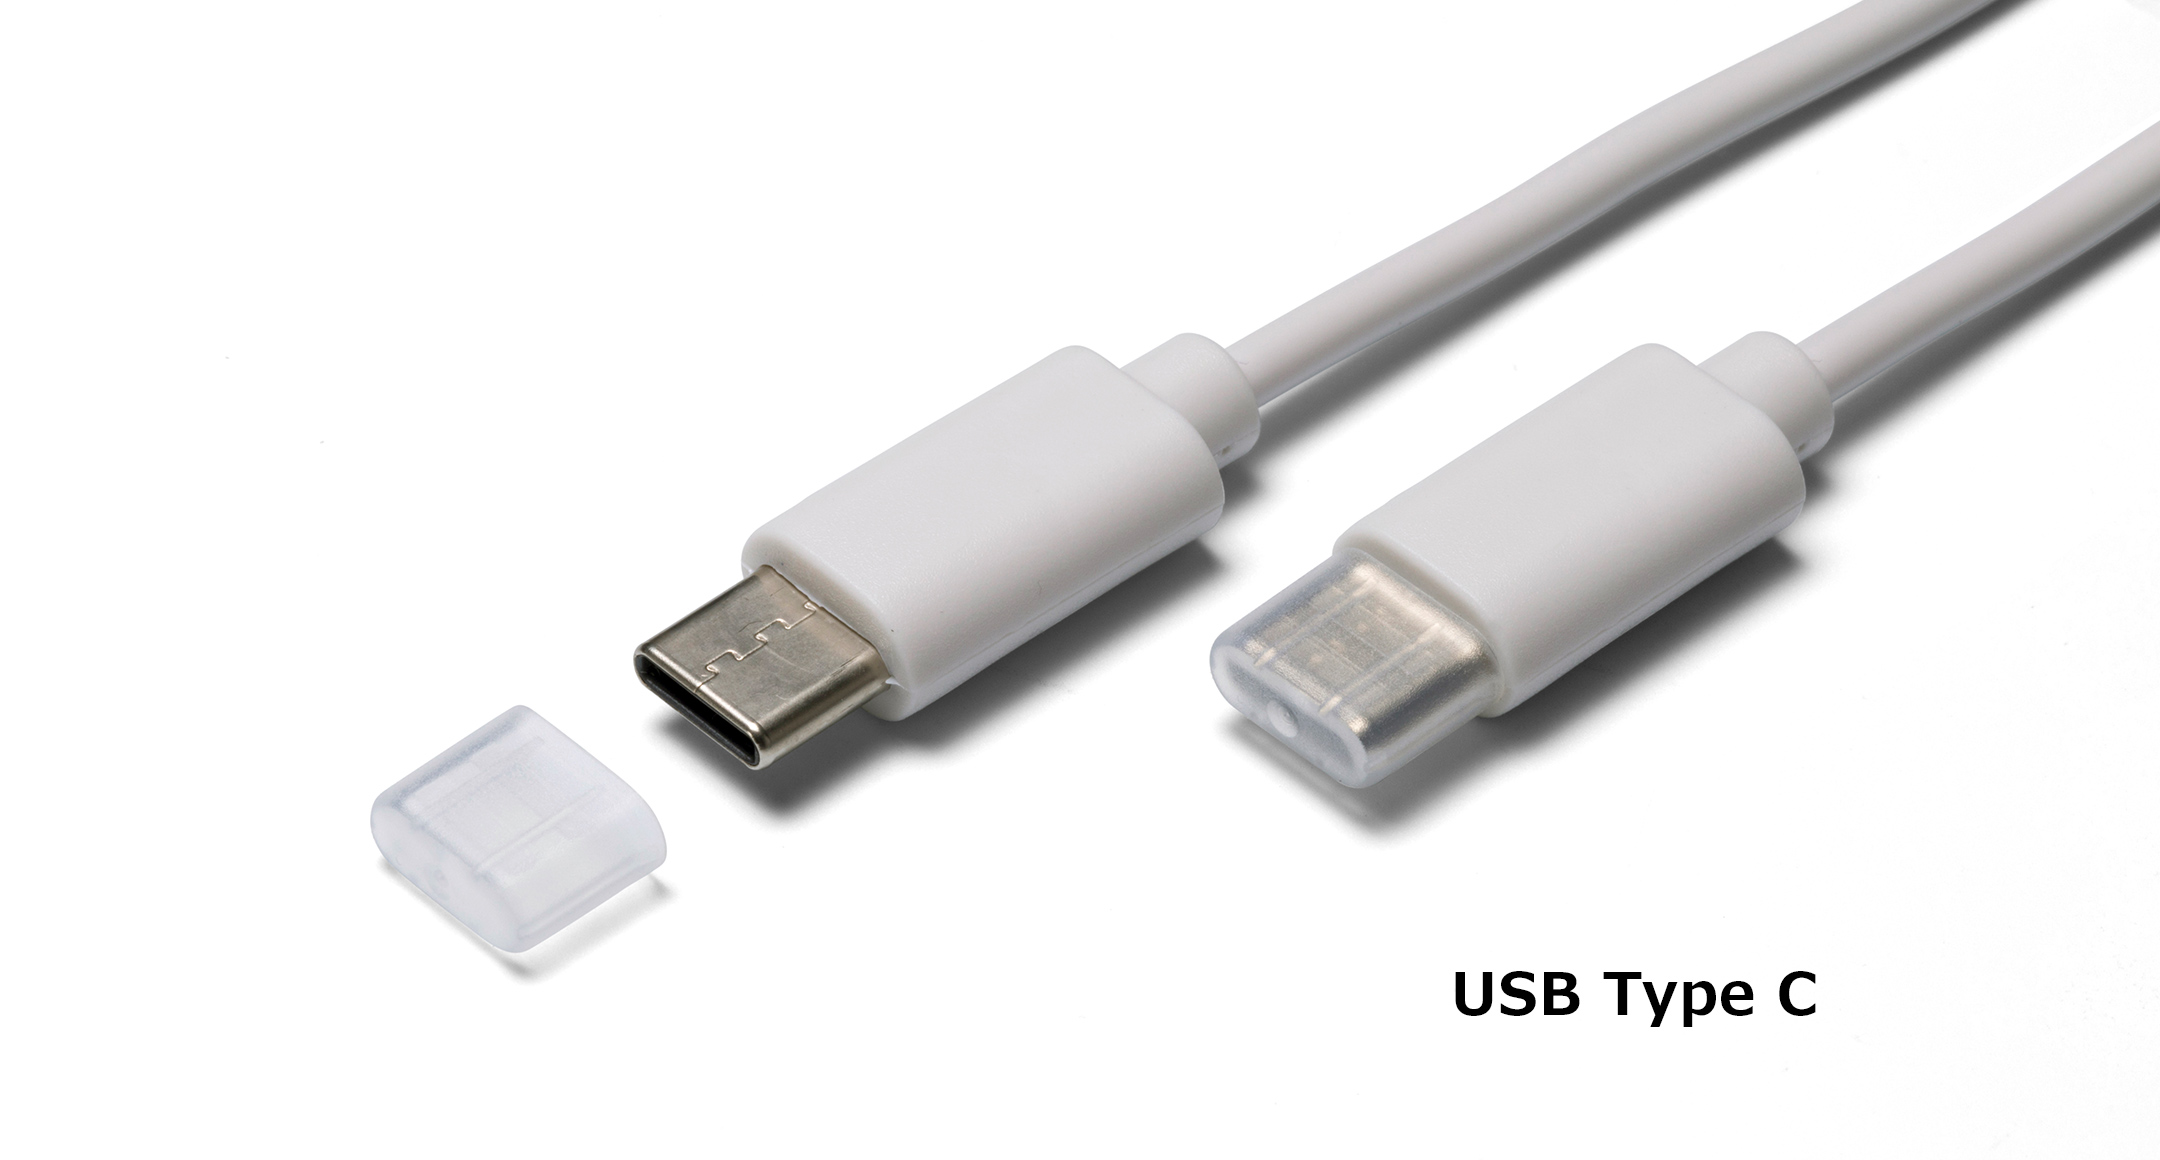 USBコネクタ保護キャップ KPS・USB3Cシリーズの画像